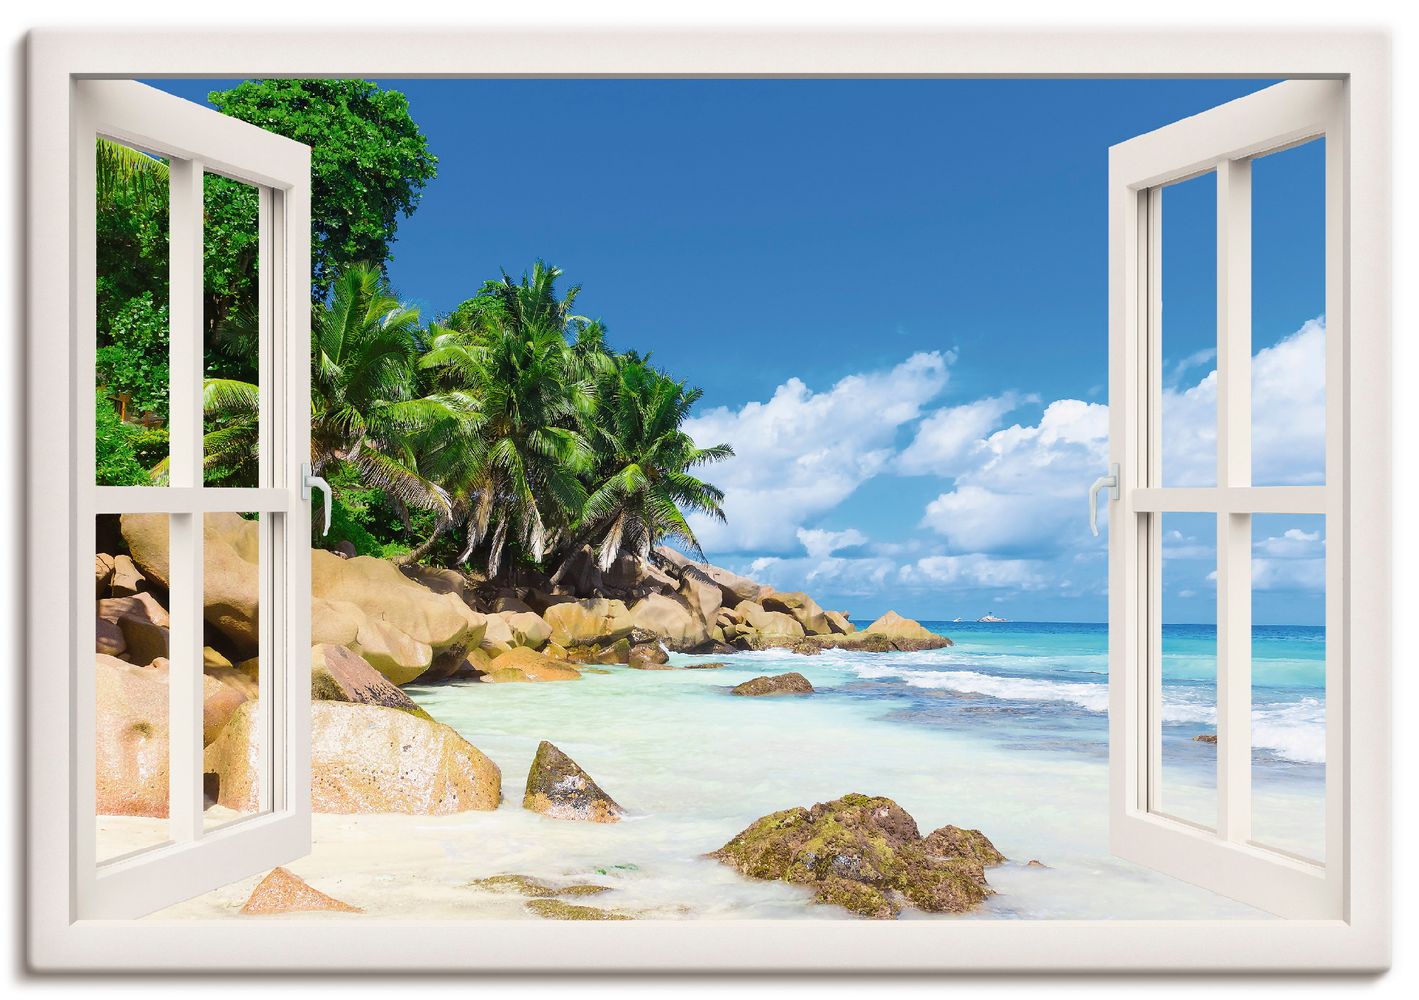 Vibrant Image Studio: Palmen-Ruhe-Ufer - mit weißem Fenster